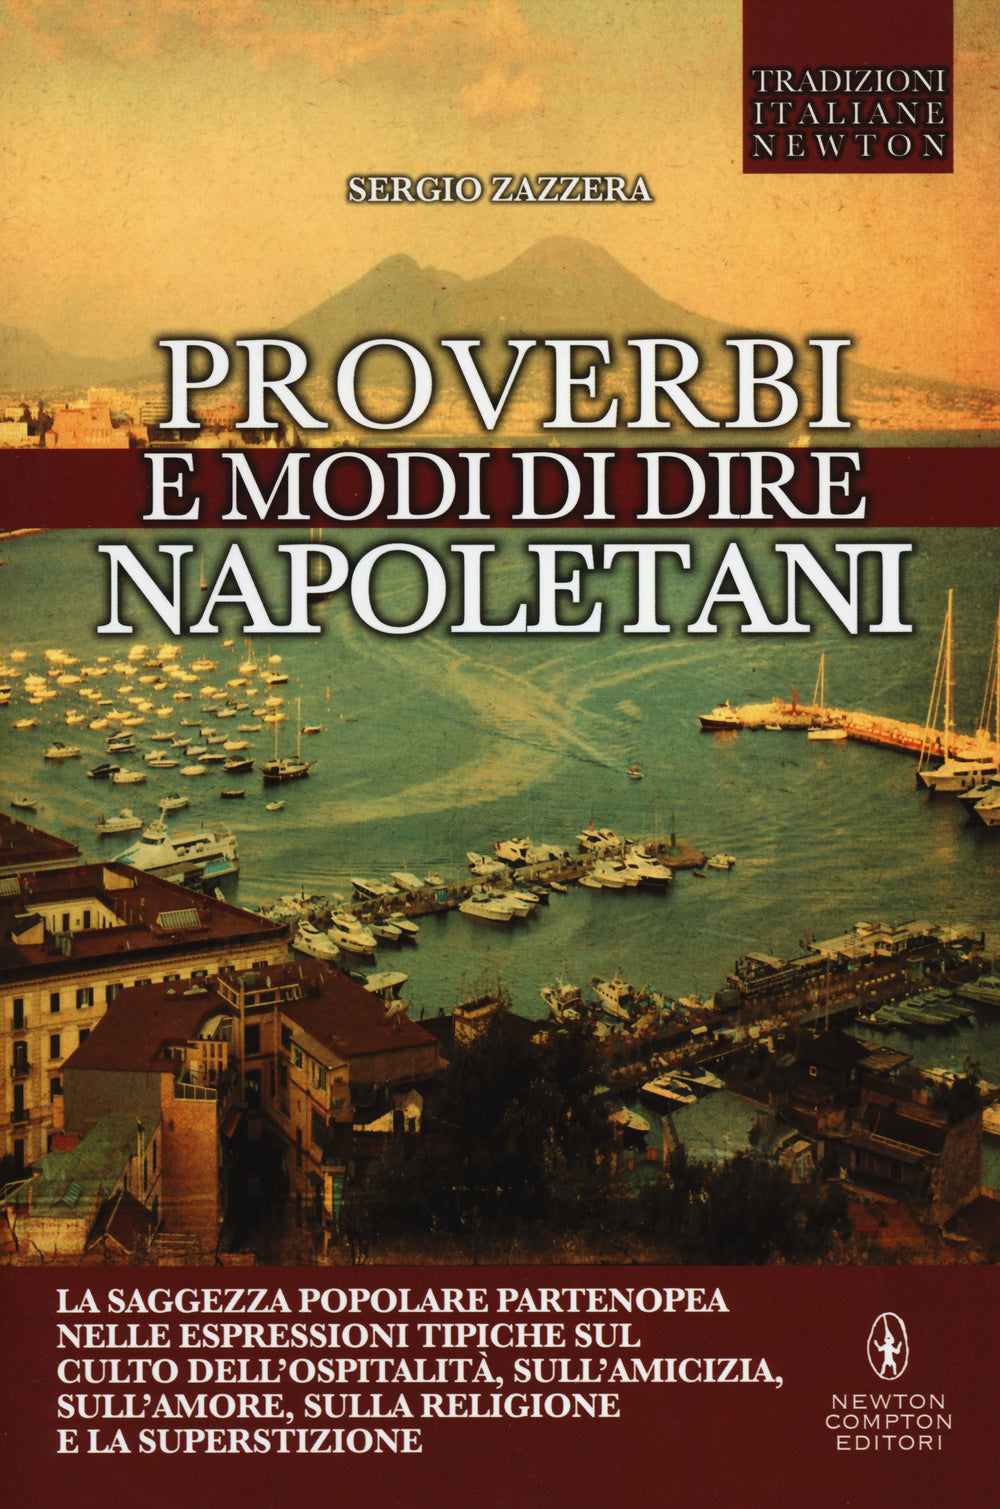 Proverbi e modi di dire napoletani.